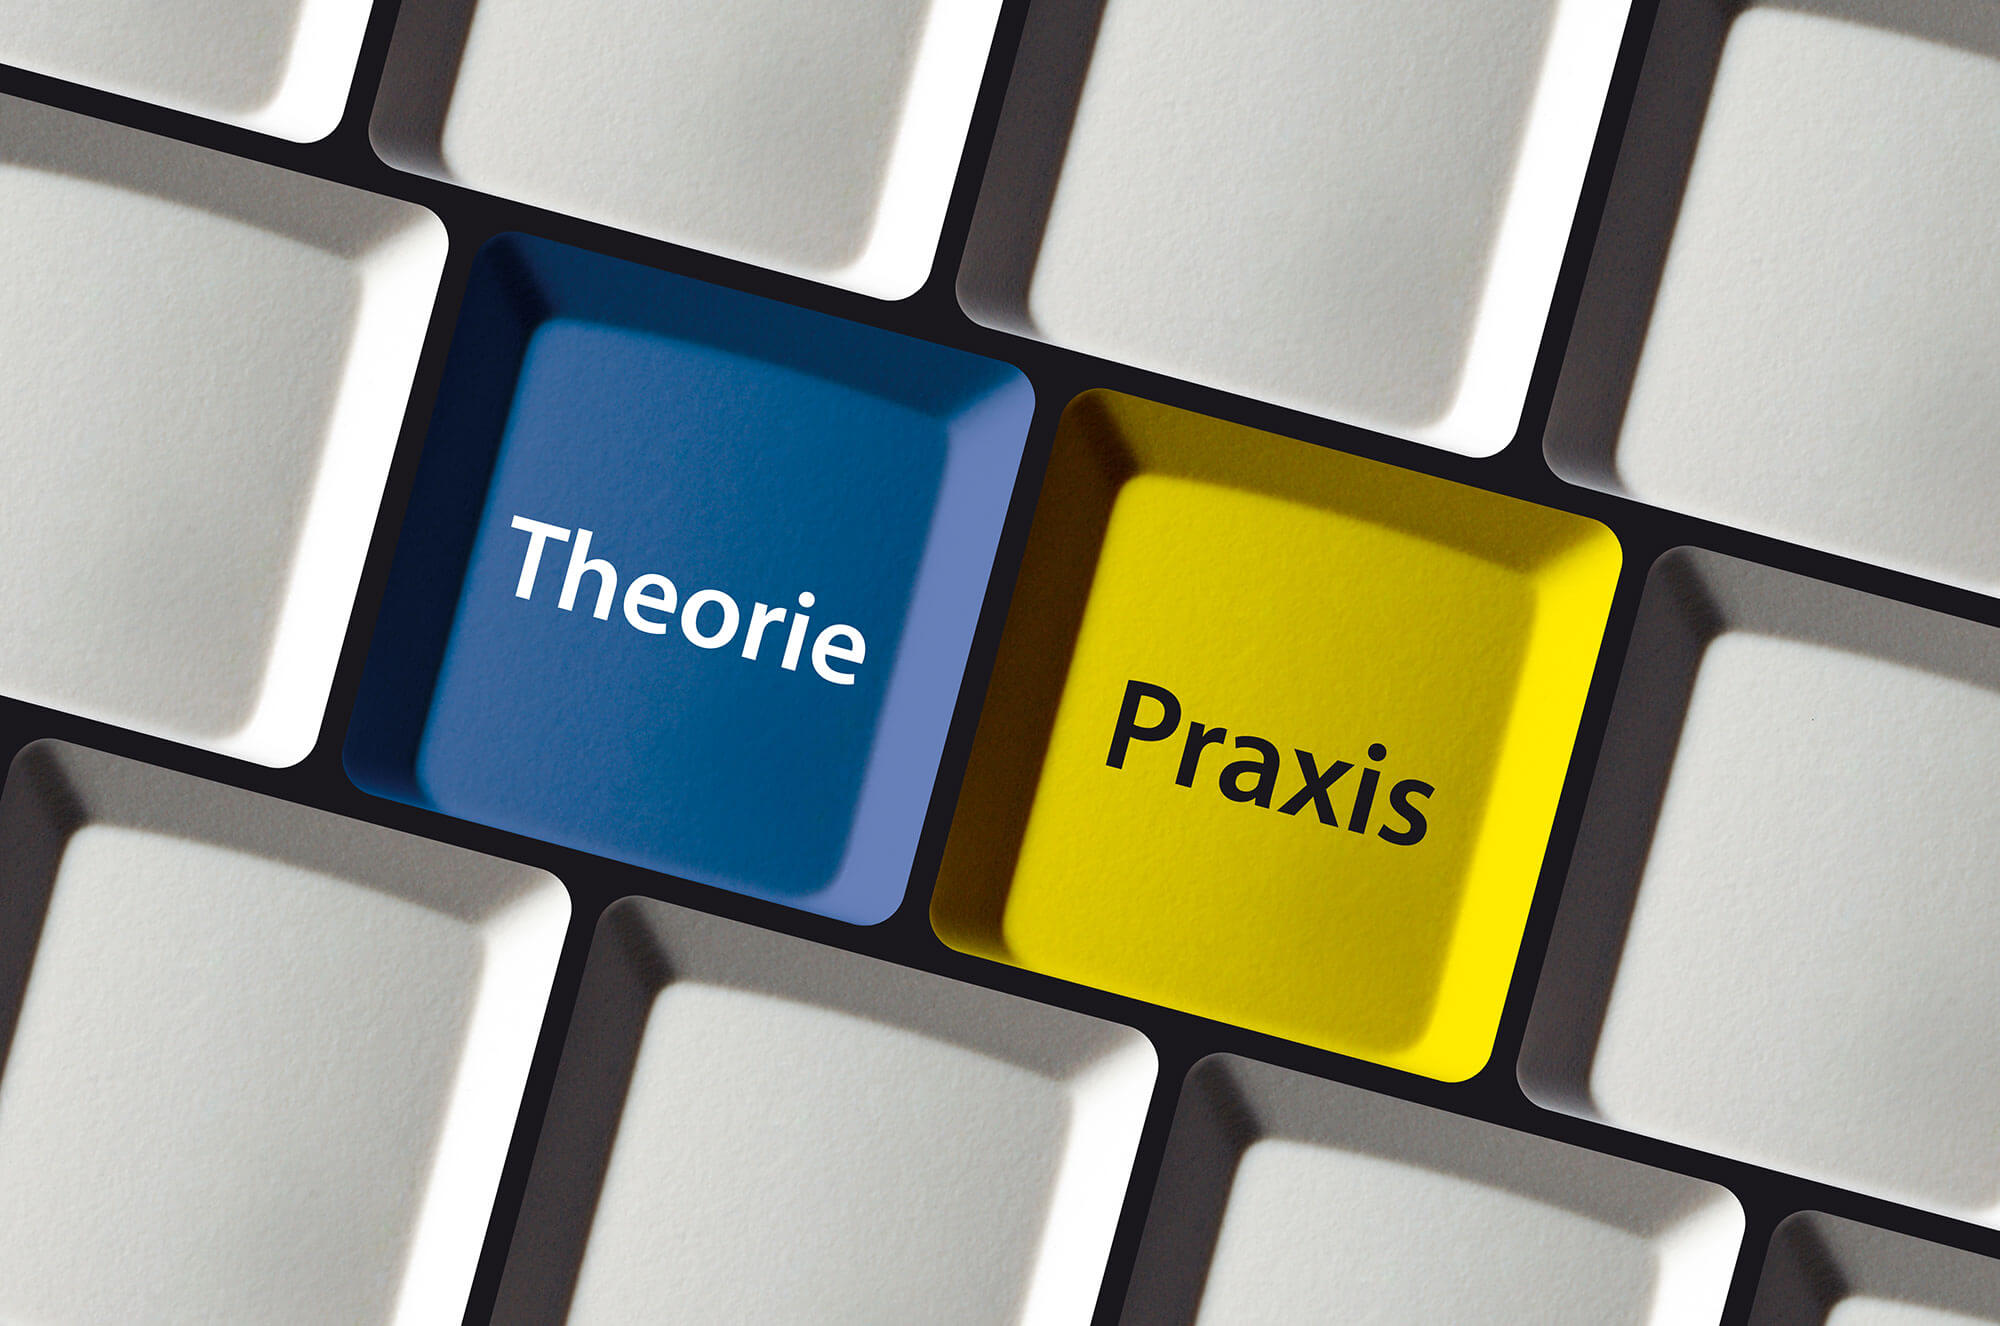 Tastatur, gefärbte Tasten "Theorie" und "Praxis" für ERP